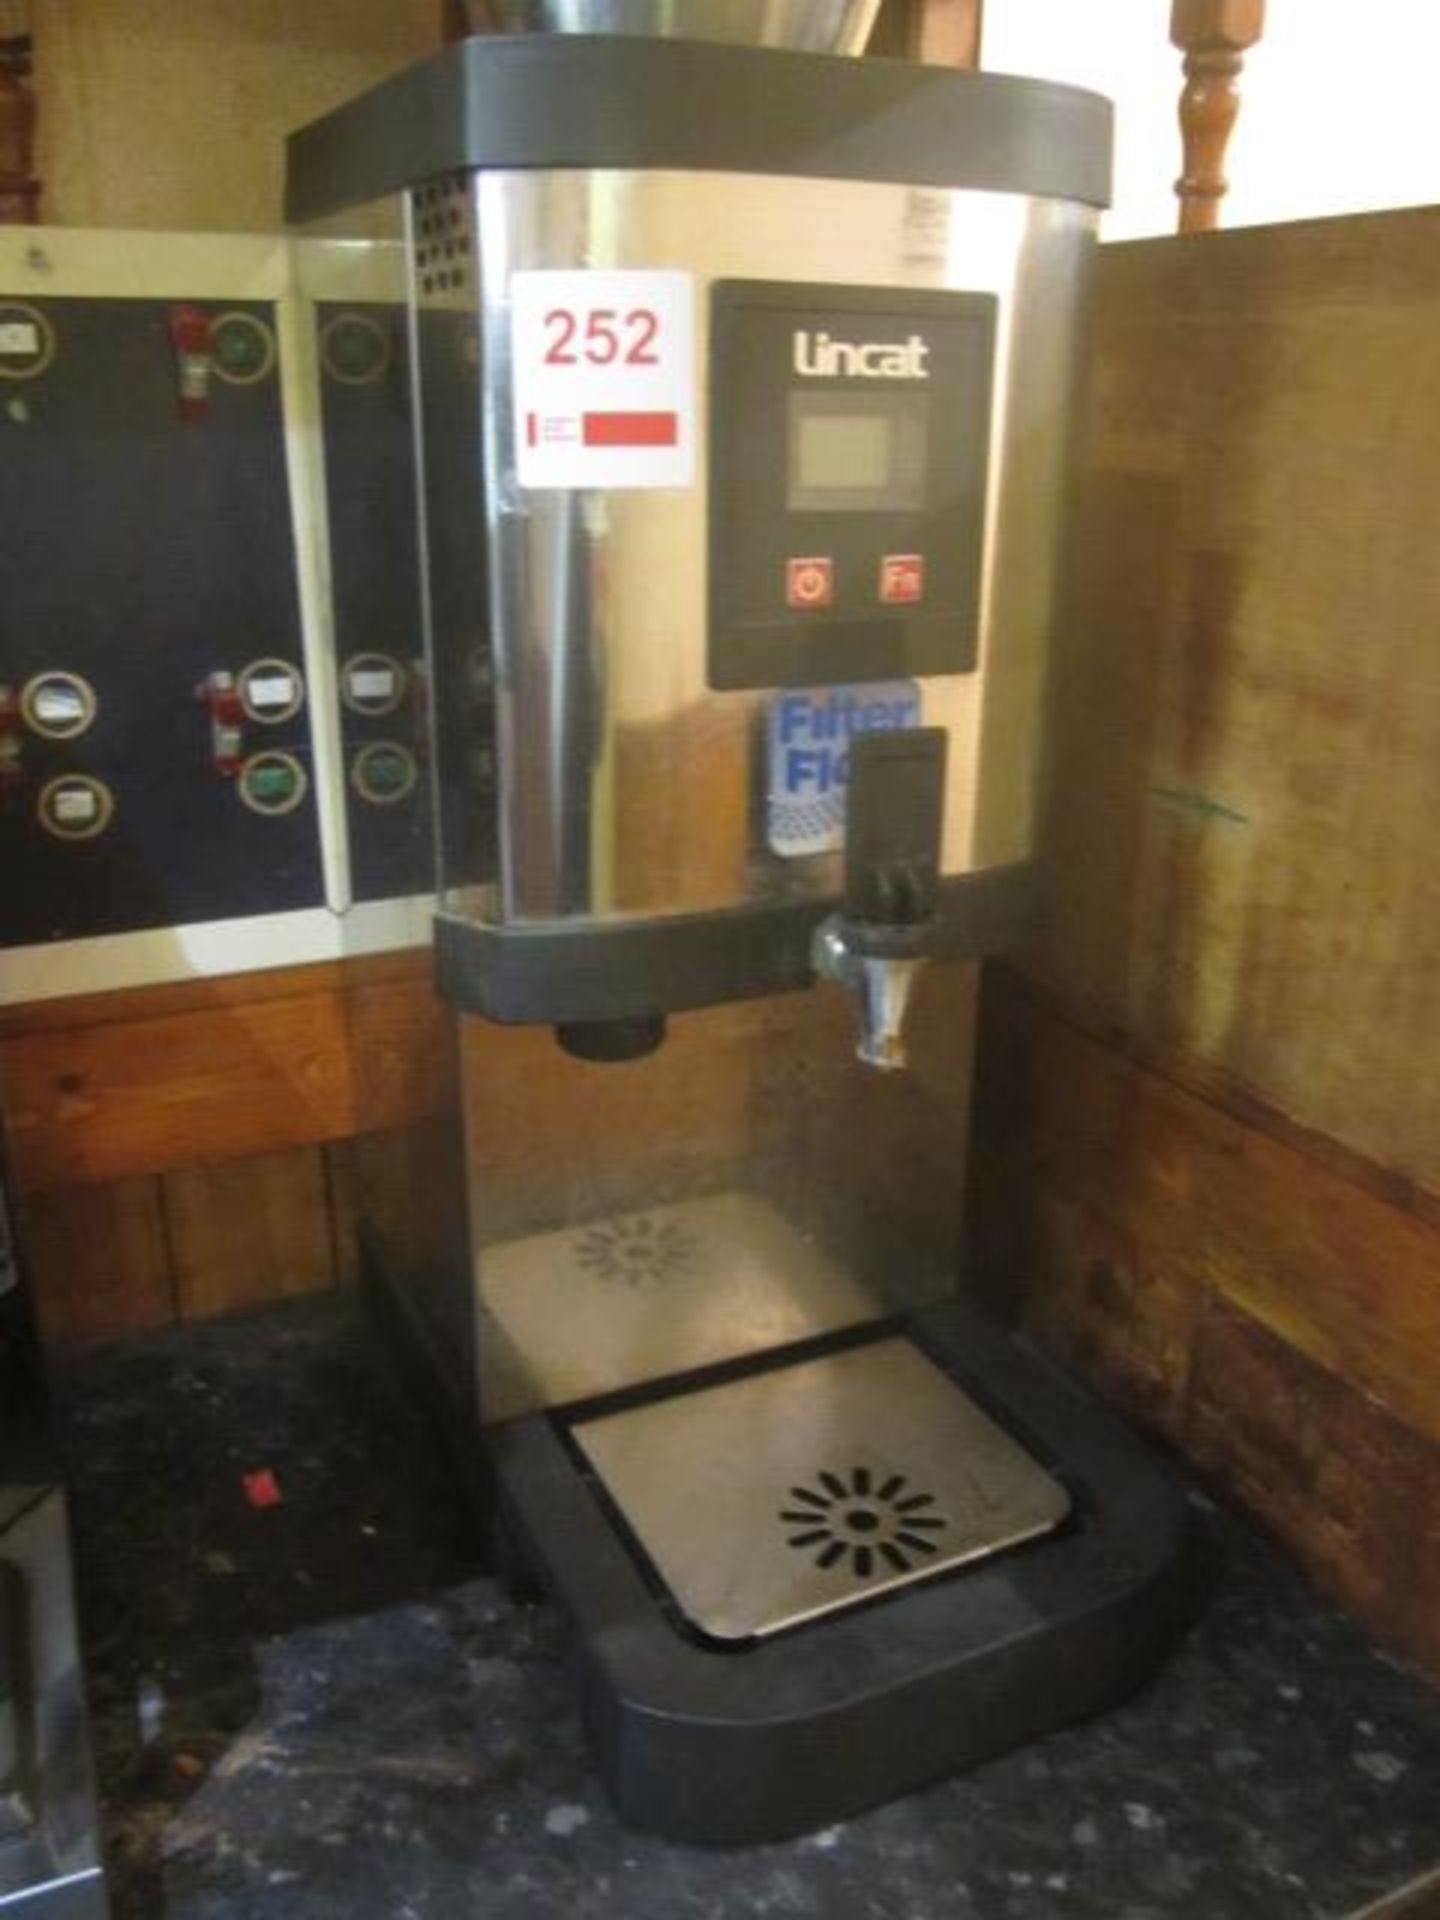 Lincat hot water dispenser **Located: Puddy Mark Café, High Street, Street, Somerset, BA16 0EW** - Image 3 of 3